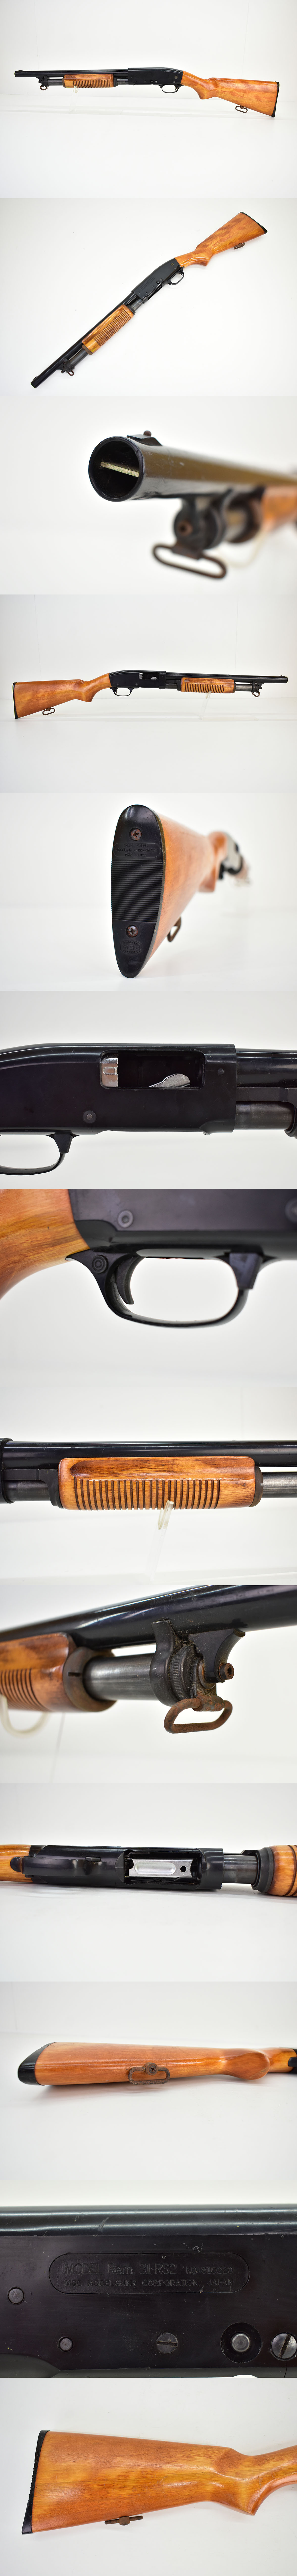 千葉激安MGC Remington M31 RS2 モデルガン [ショットガン][レミントンM31][樹脂製]M モデルガン